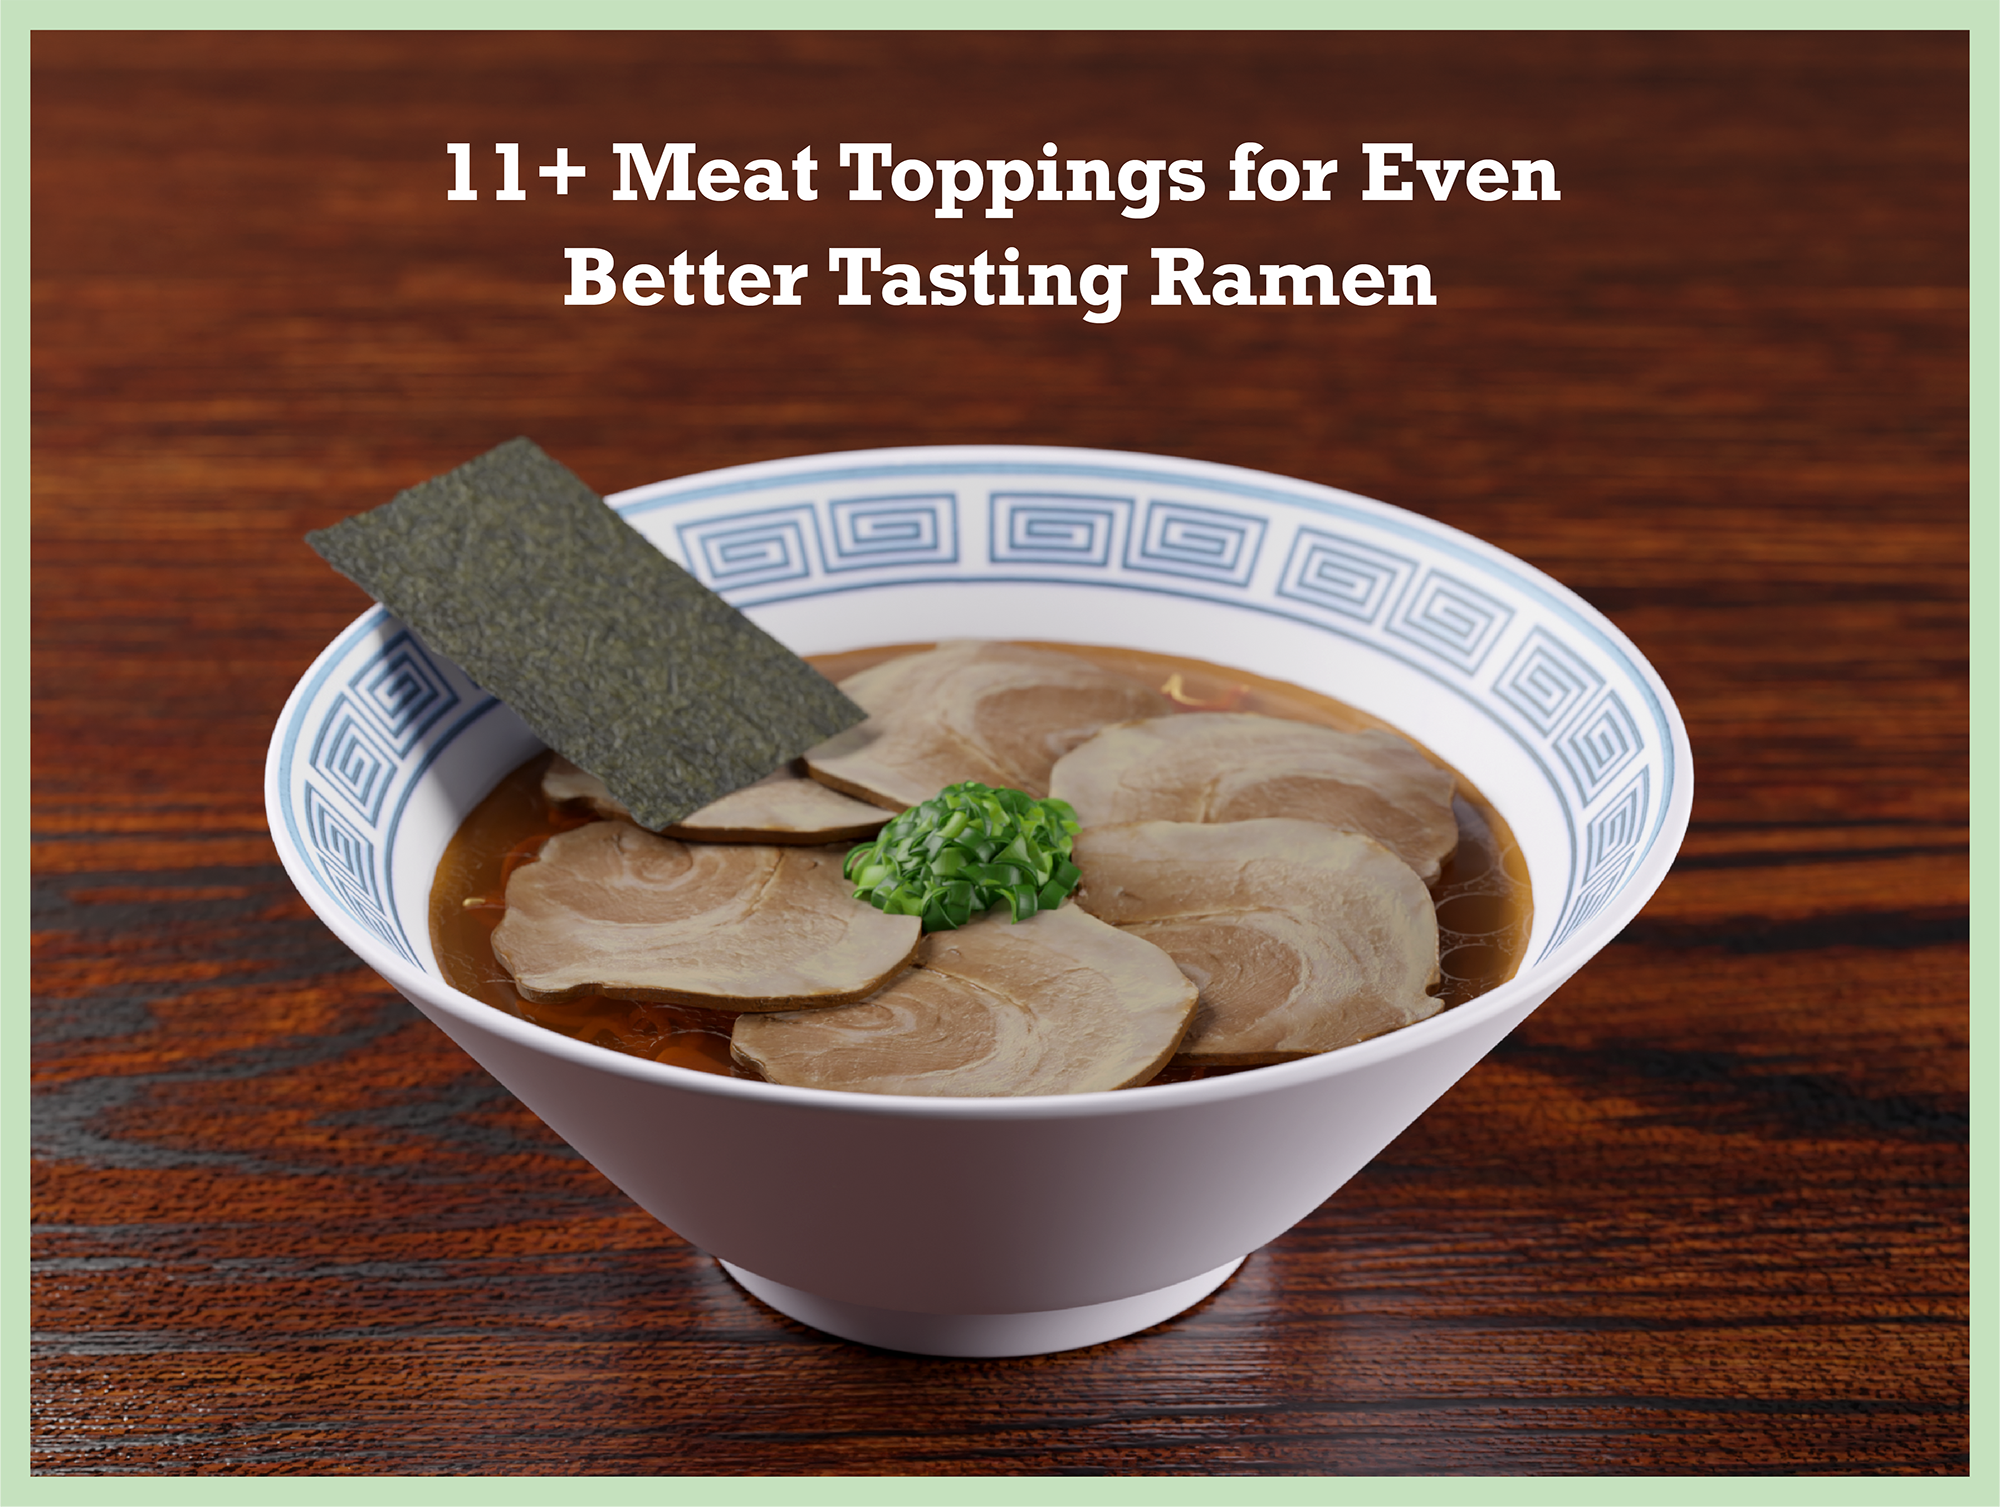 11+ Meat Toppings for Even Better Tasting Ramen